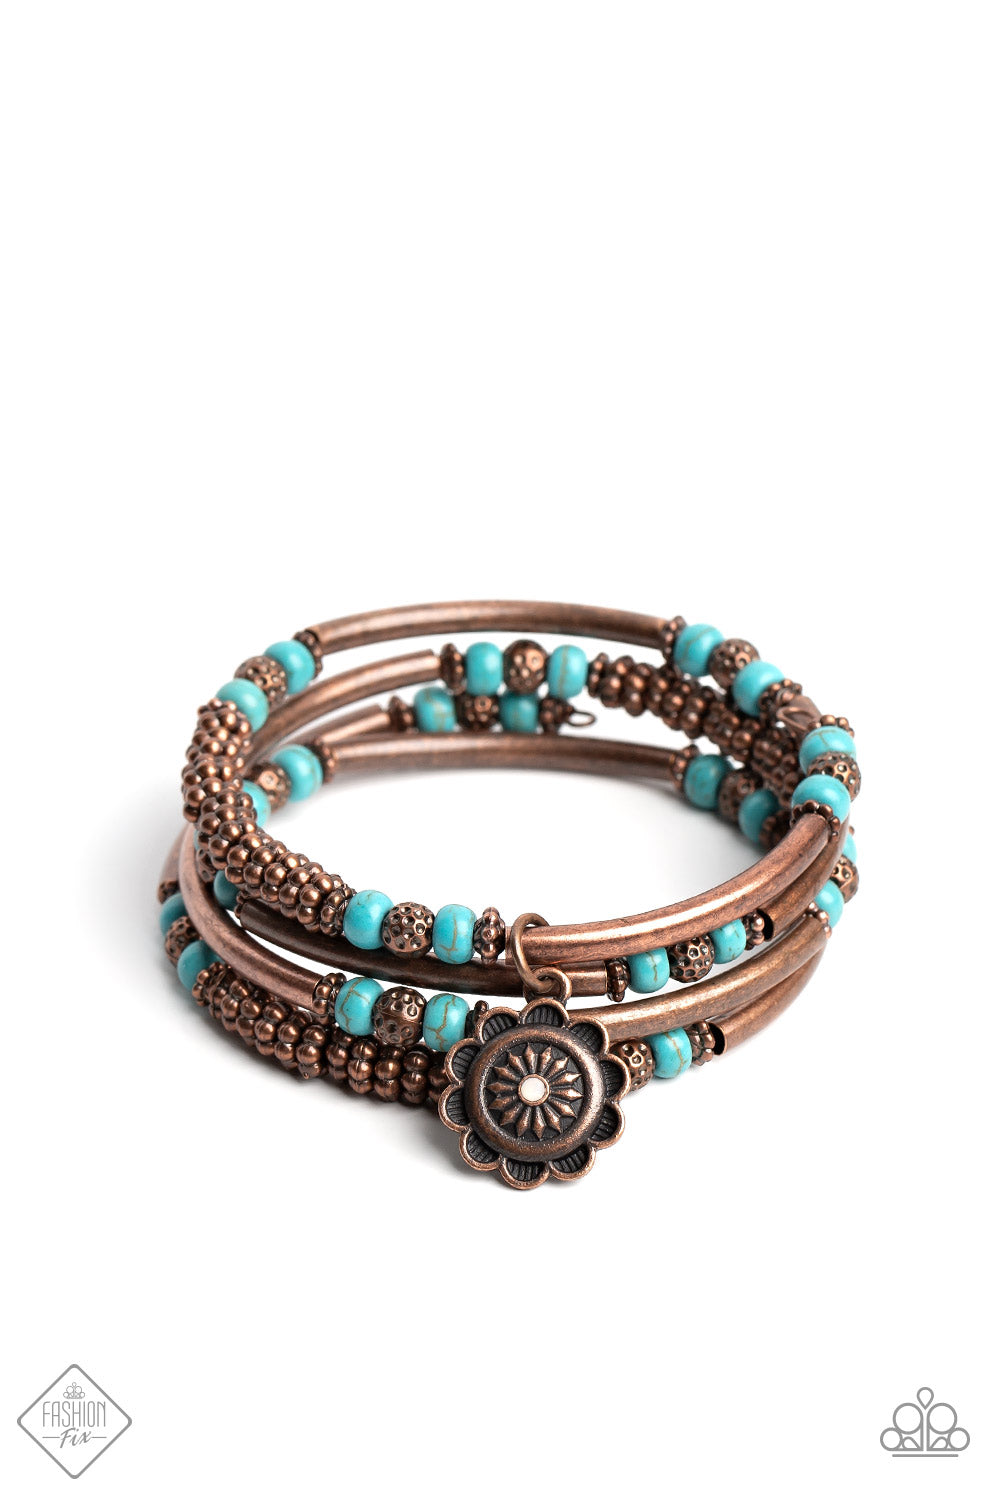 Badlands Bunch - Copper & Blue Stone Coil Bracelet Feb 2023 Fashion Fix Exclusive - Princess Glam Shop